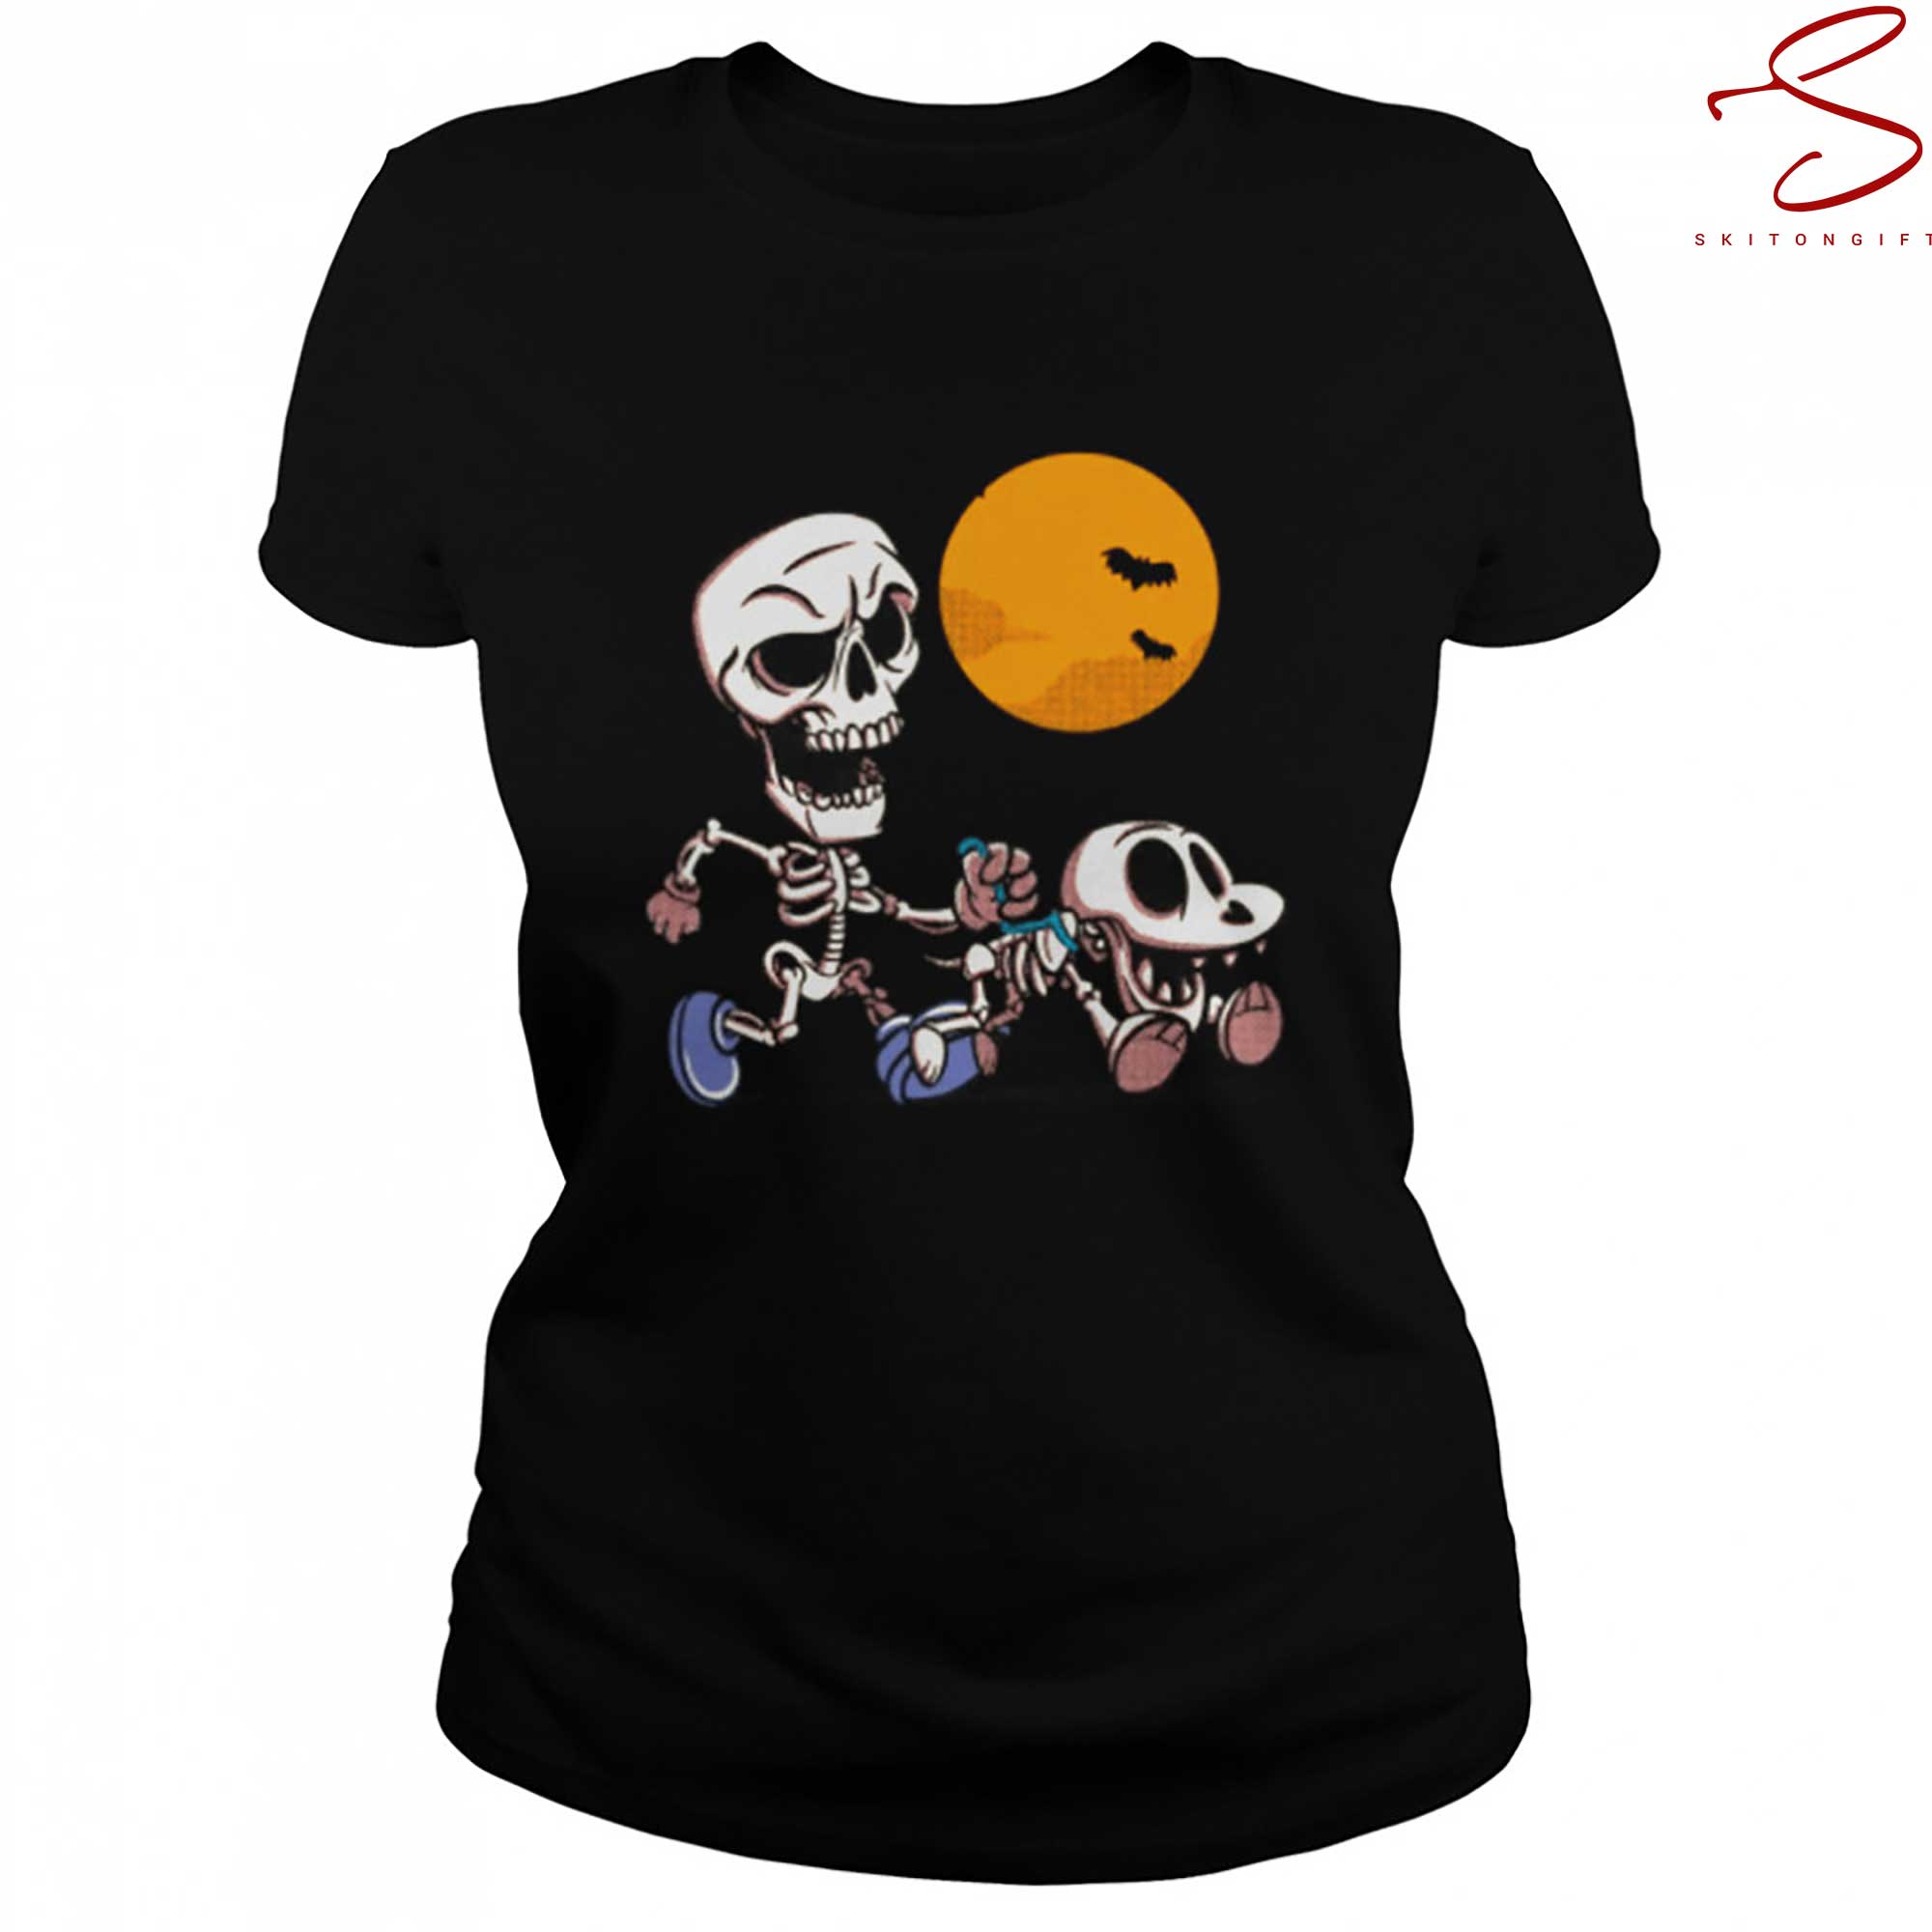 Skitongift Pet Sitter Spooky Skeleton Dog Walker Halloween Art T Shirt